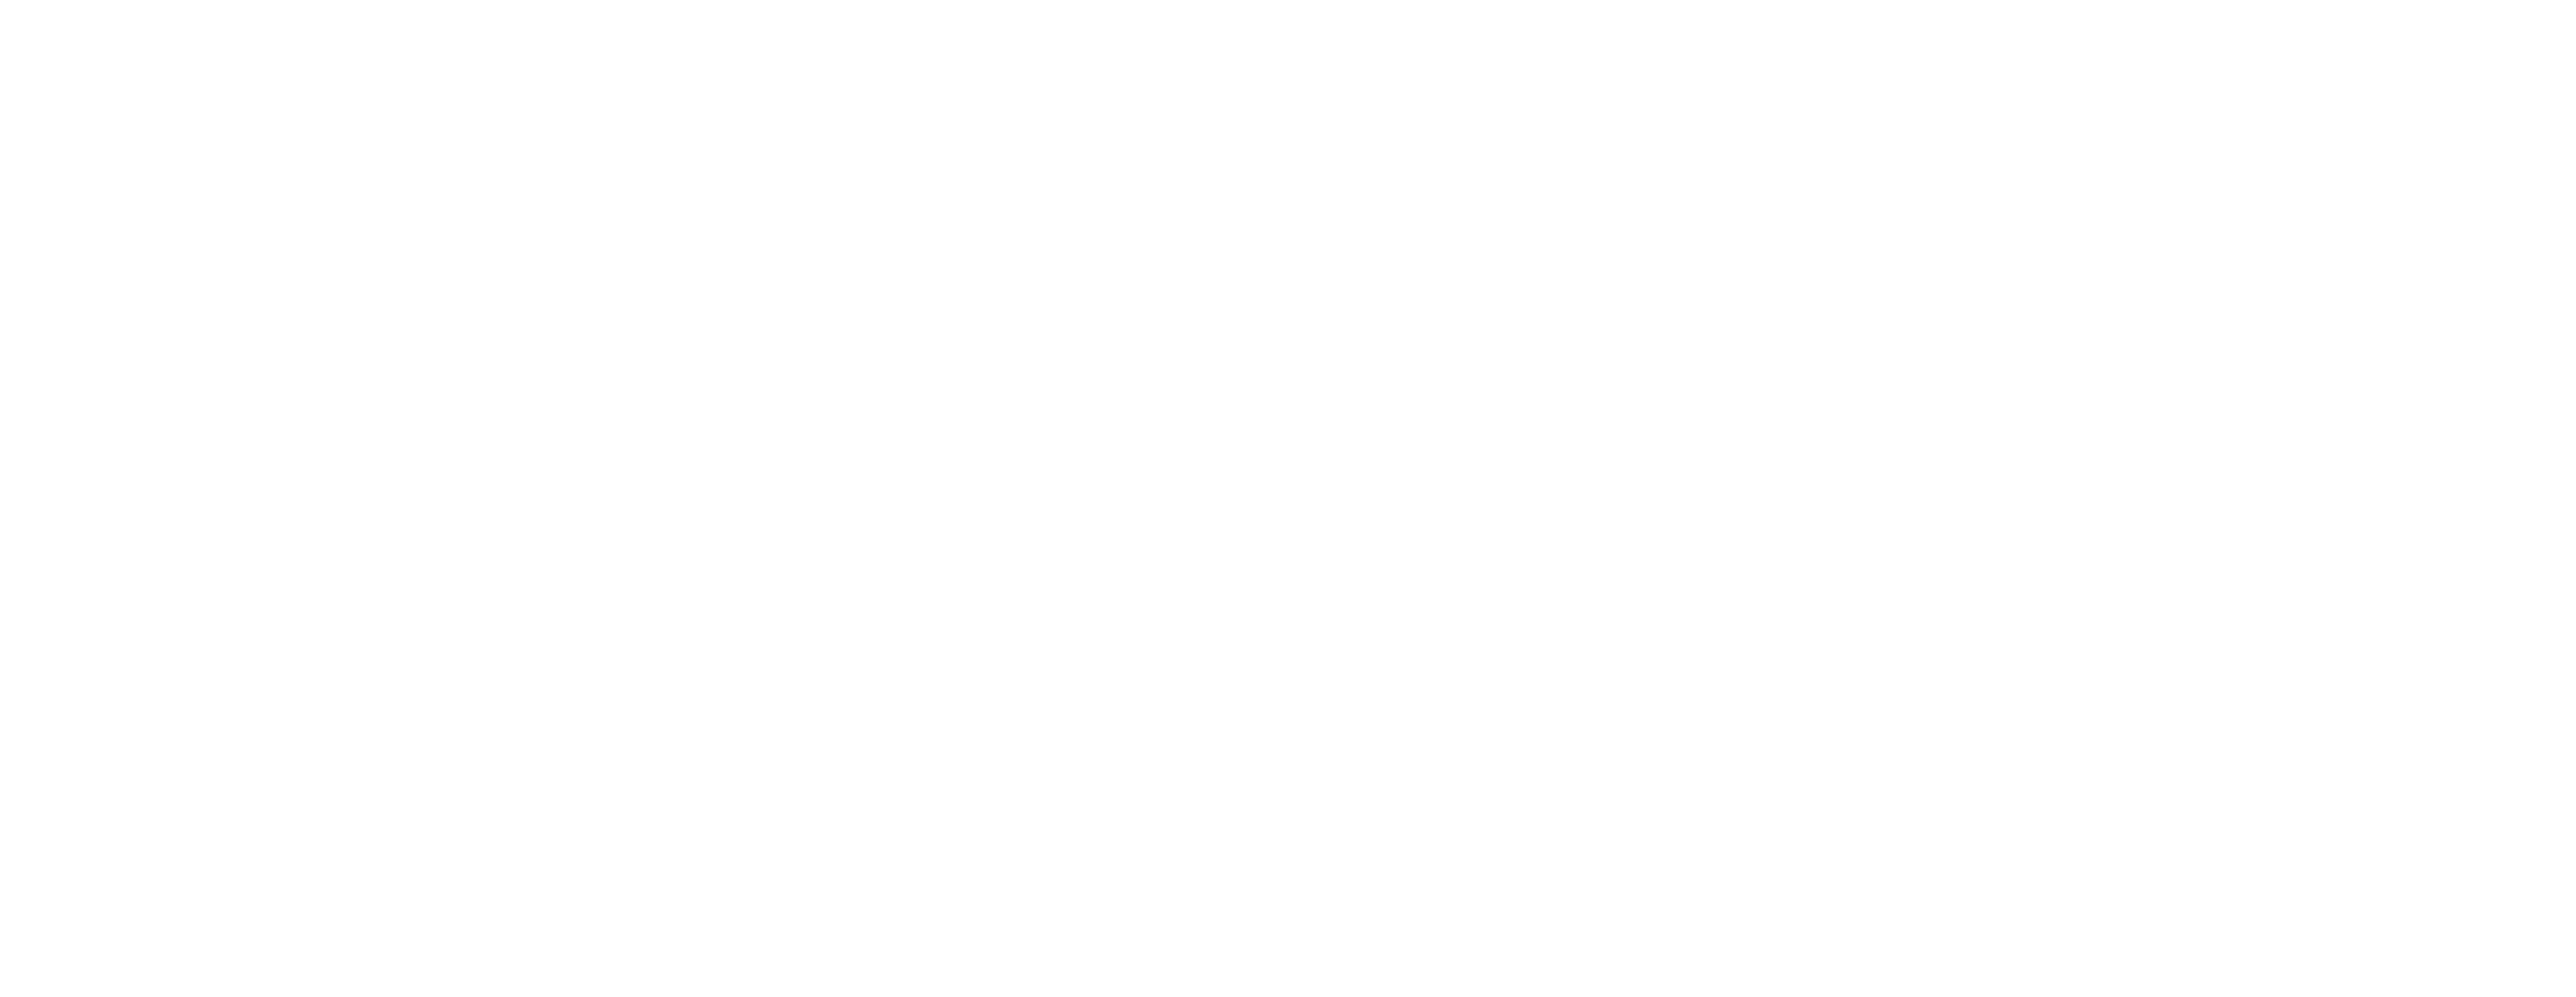 Myer Logo - Myer